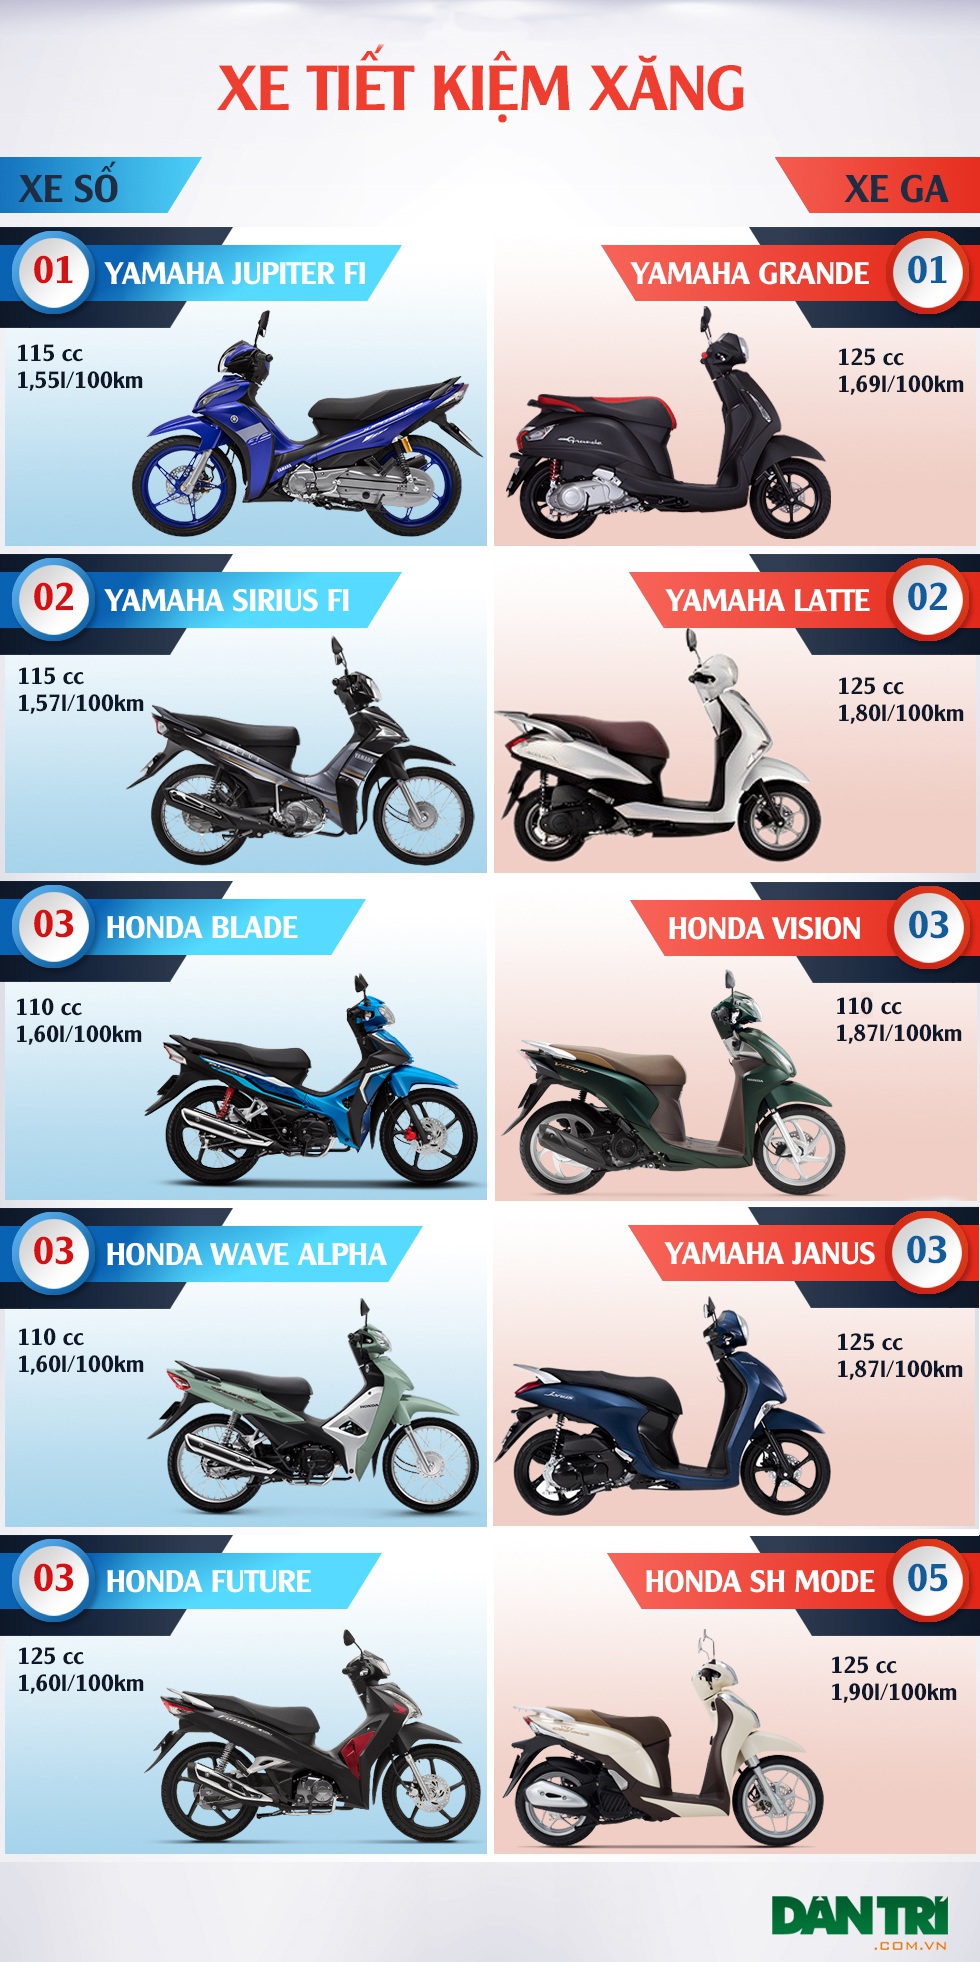 Đây là 5 mẫu xe máy giá rẻ tiết kiệm xăng nhất ở Việt Nam hiện nay